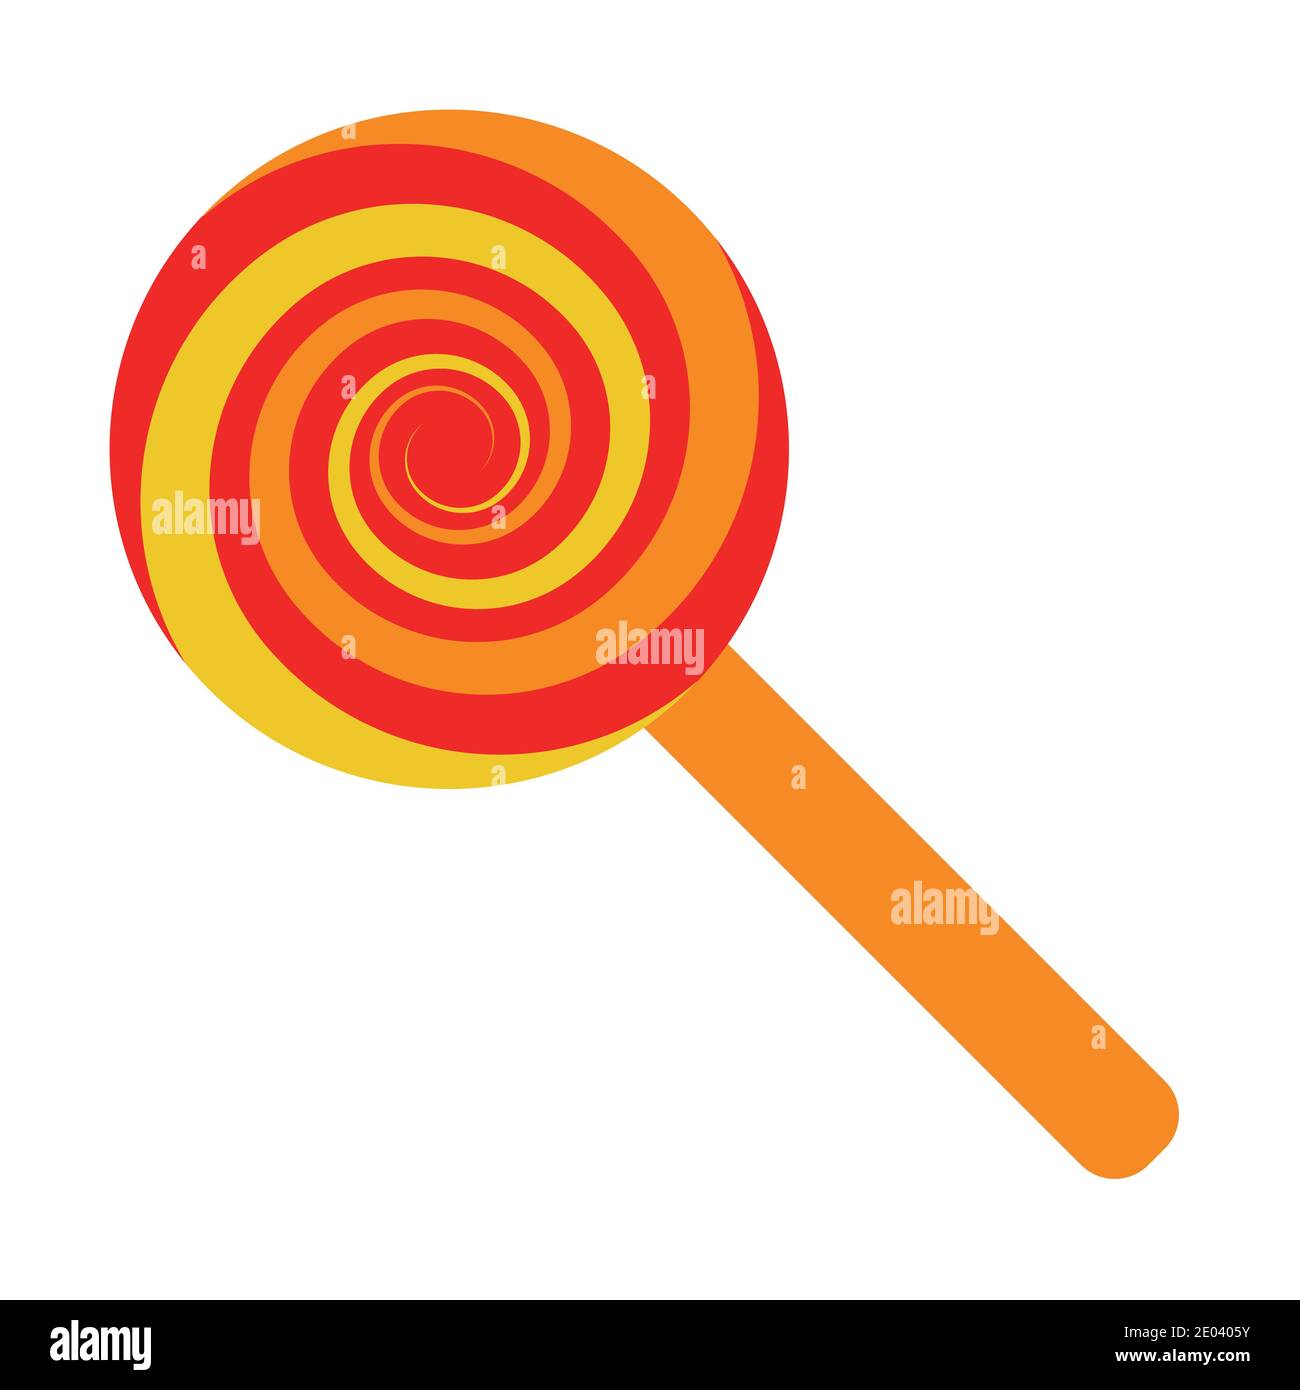 Lollipop Candy auf einem Stick, Saugen Candy, Illustration mit roten Lollipop auf bunten Hintergrund Konzept-Design Stock Vektor